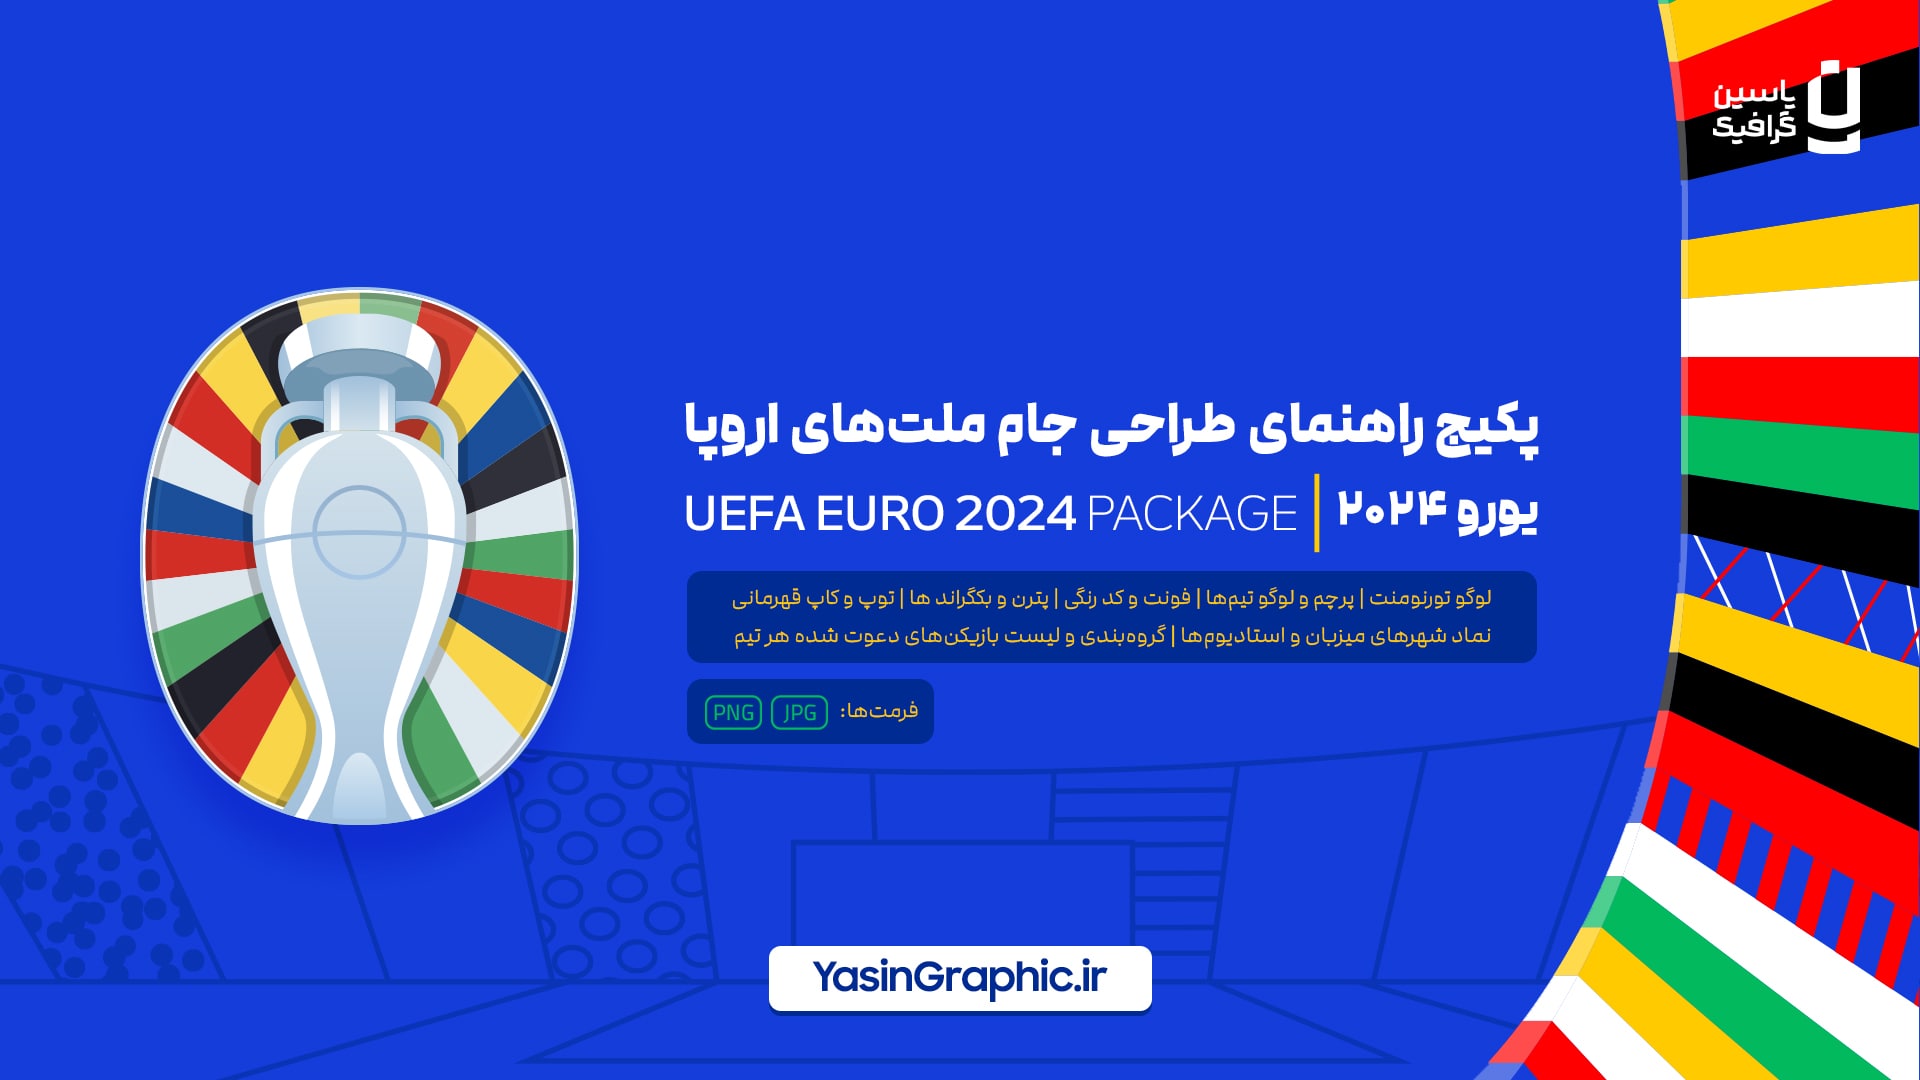 پکیج راهنمای طراحی جام ملت های اروپا 2024